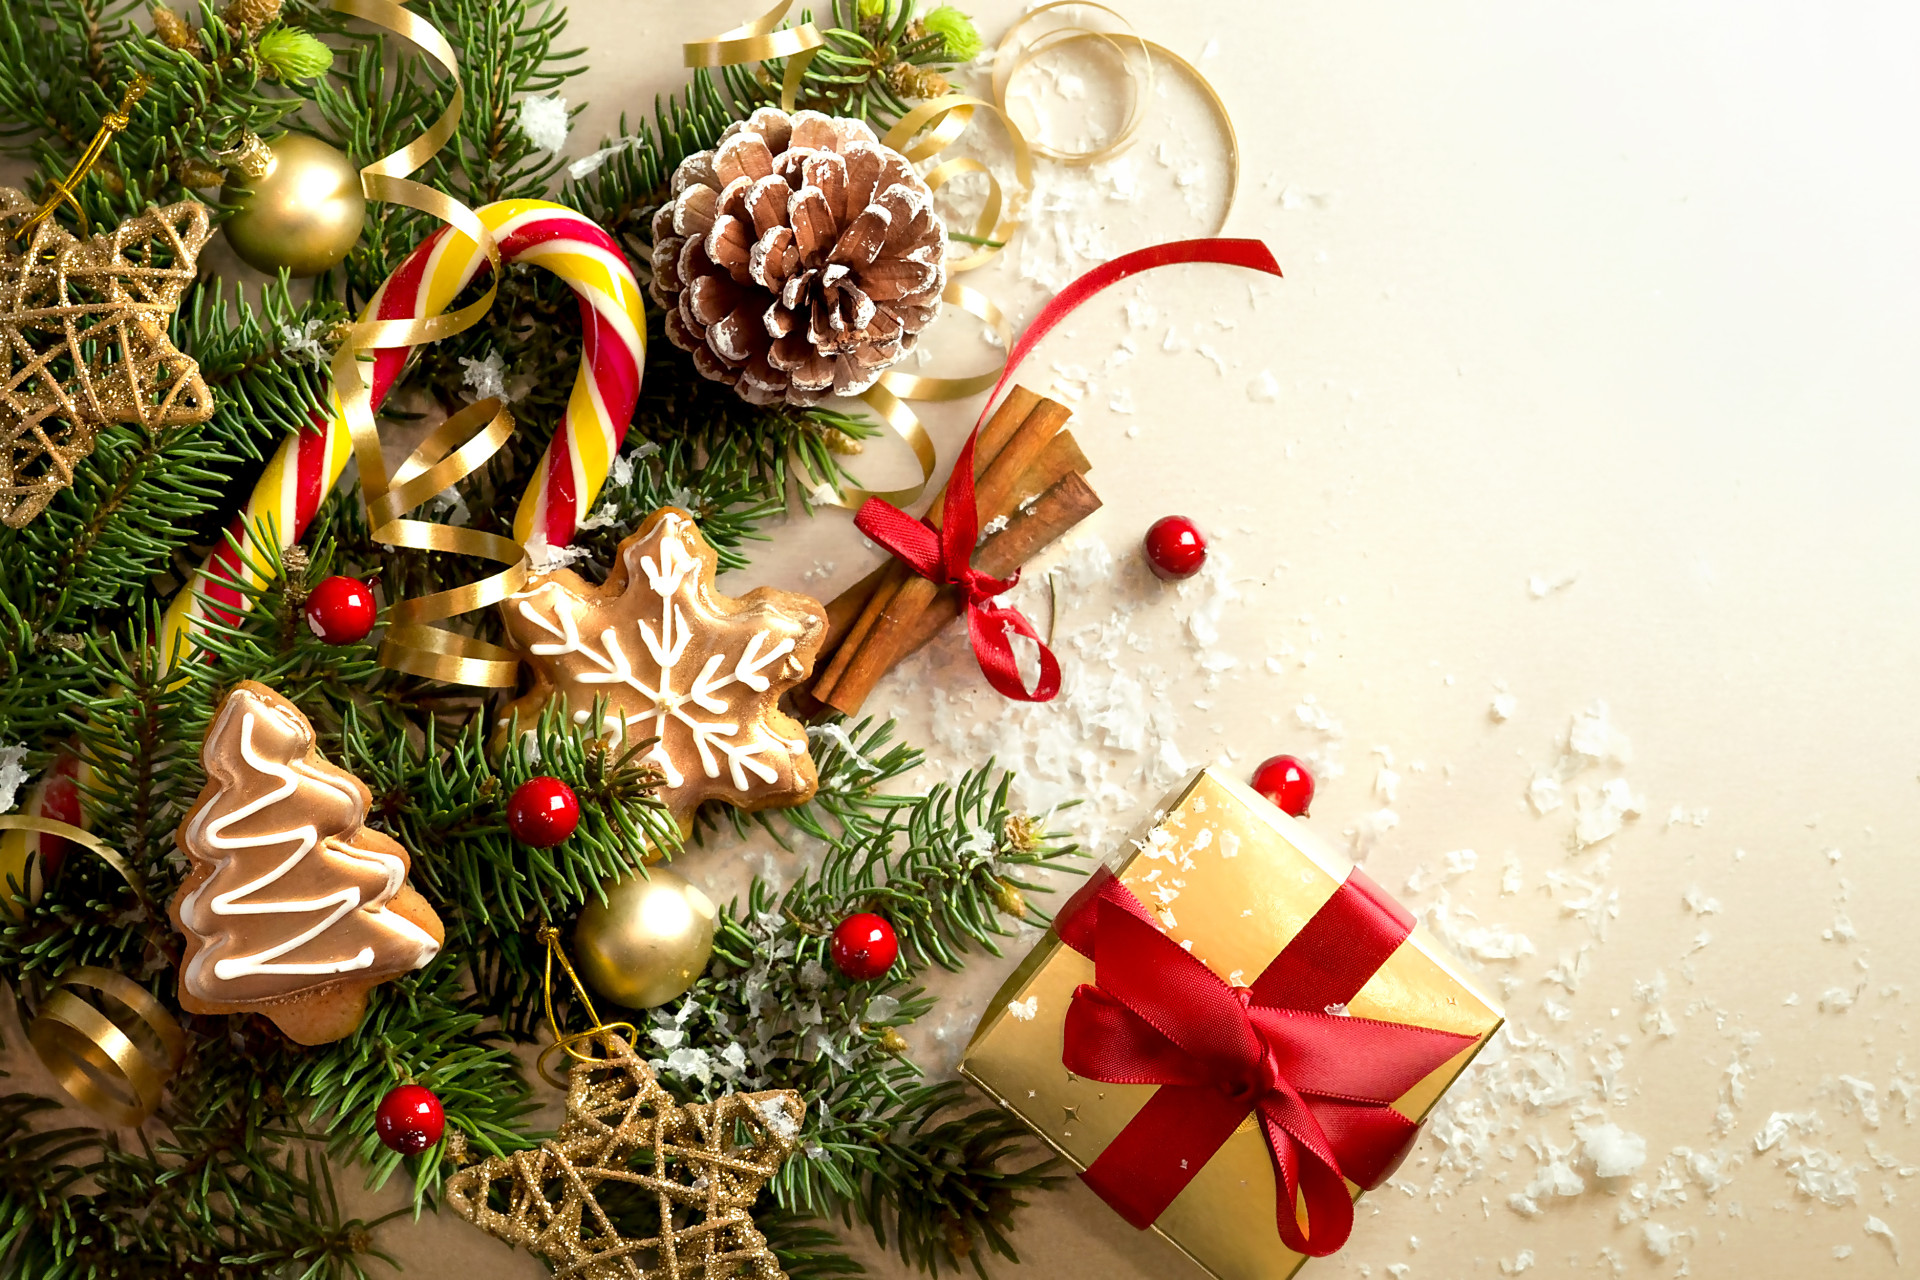 Cadeaux, sapin, flocons de neiges et friandises pour célebrer Noël